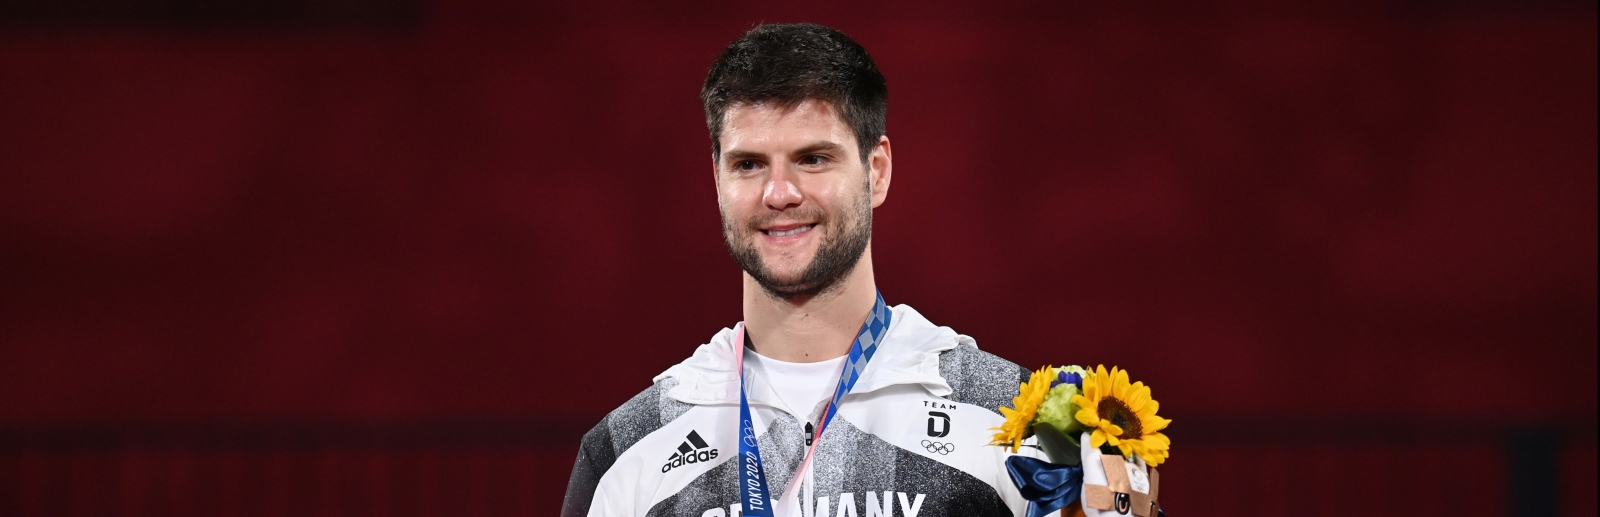 Dimitrij Ovtcharov mit seiner Bronzemedaille